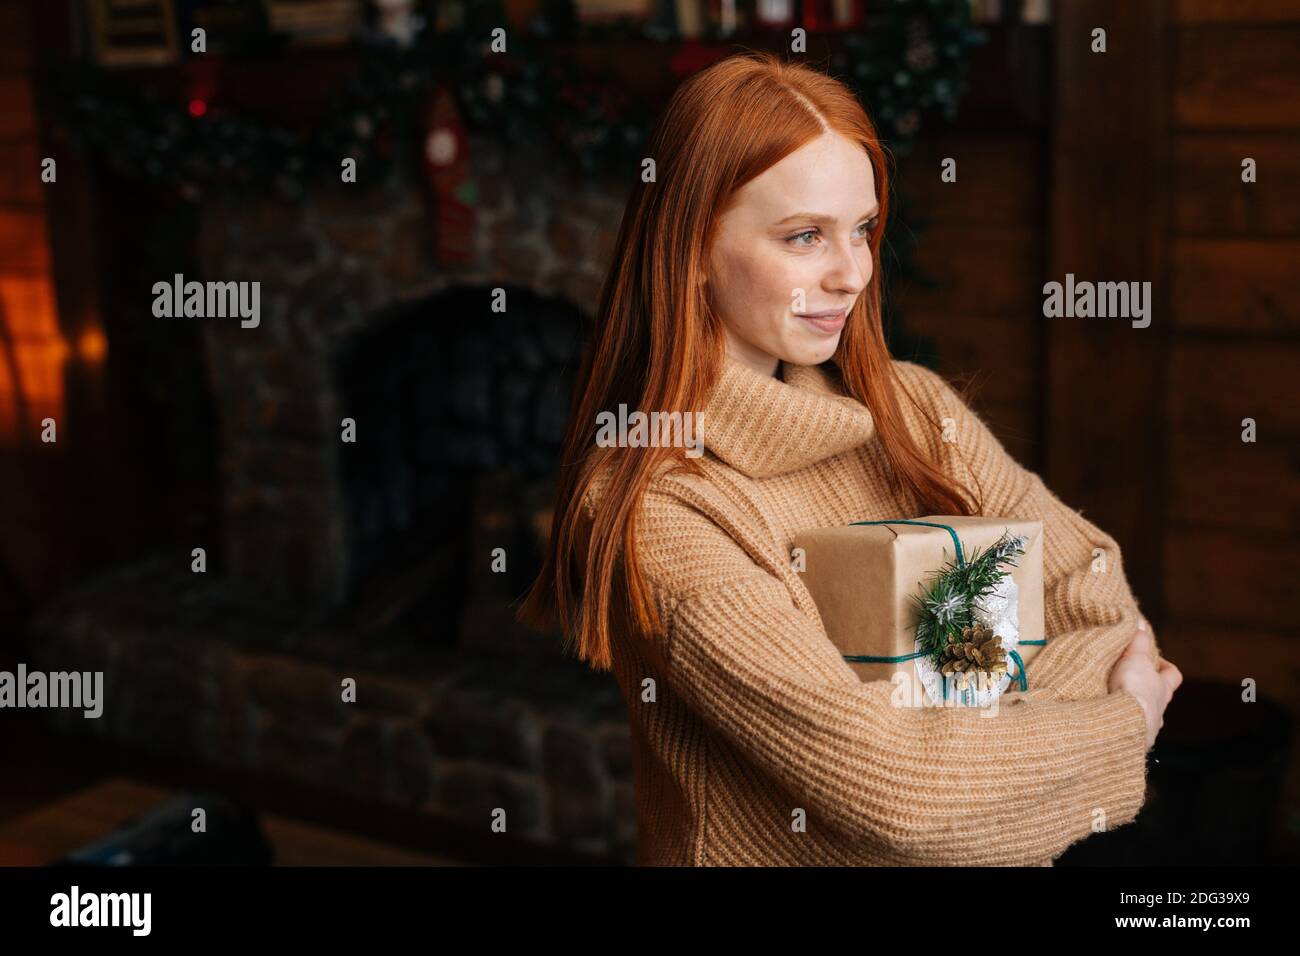 Lächelnd rothaarige junge Frau hält schöne Weihnachts-Geschenkbox, während sie im gemütlichen Wohnzimmer steht. Stockfoto